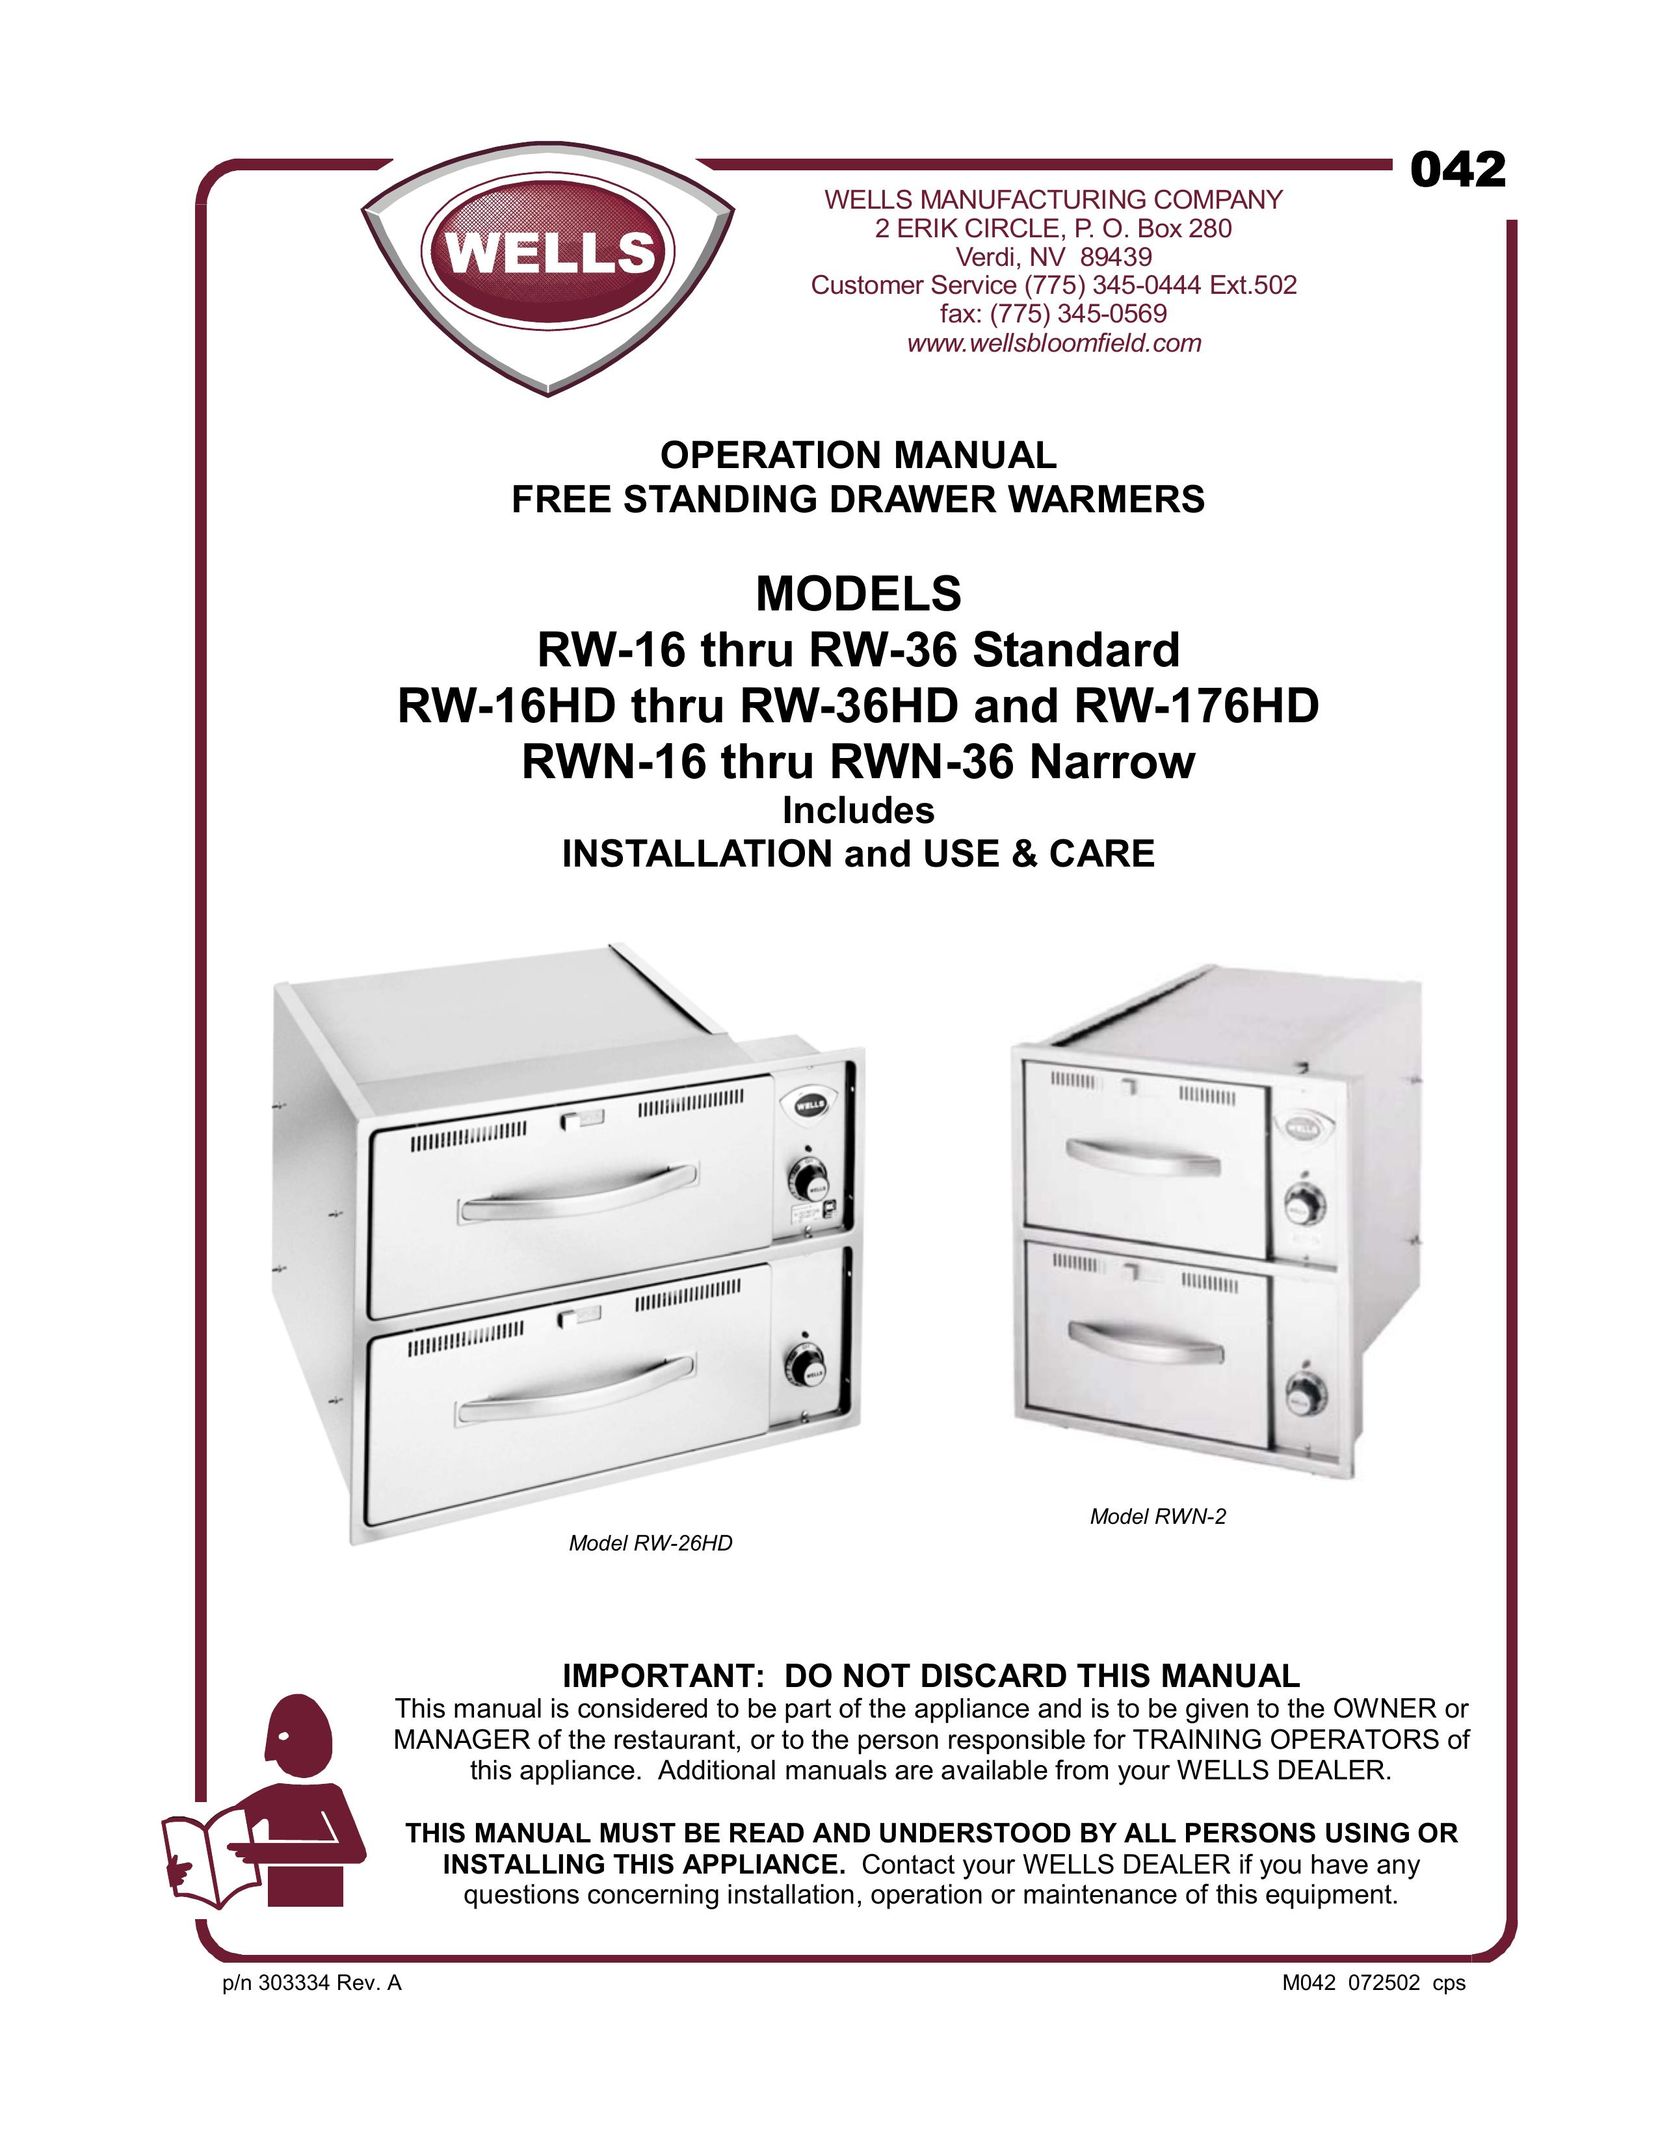 Wells RW-26HD Food Warmer User Manual